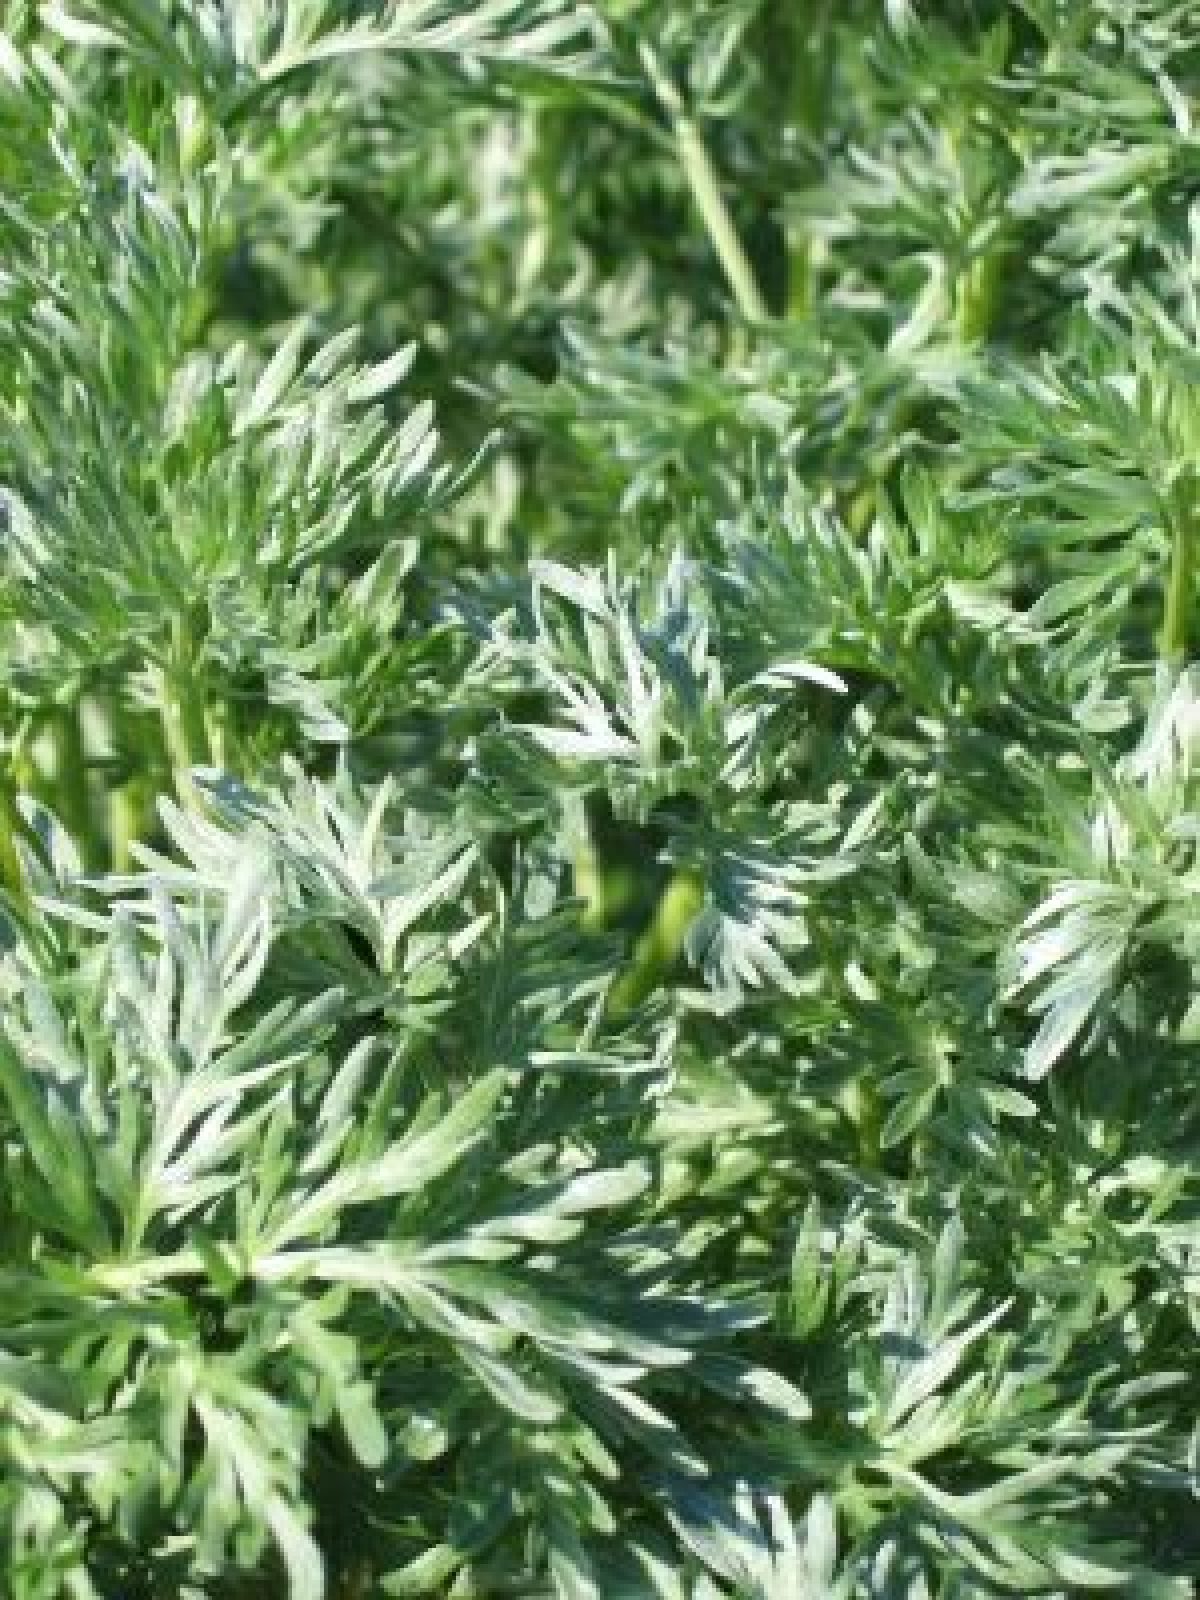 Ceai de pelinita sau pelin dulce (Artemisia Annua), g, Pelin pentru a îmbunătăți vederea